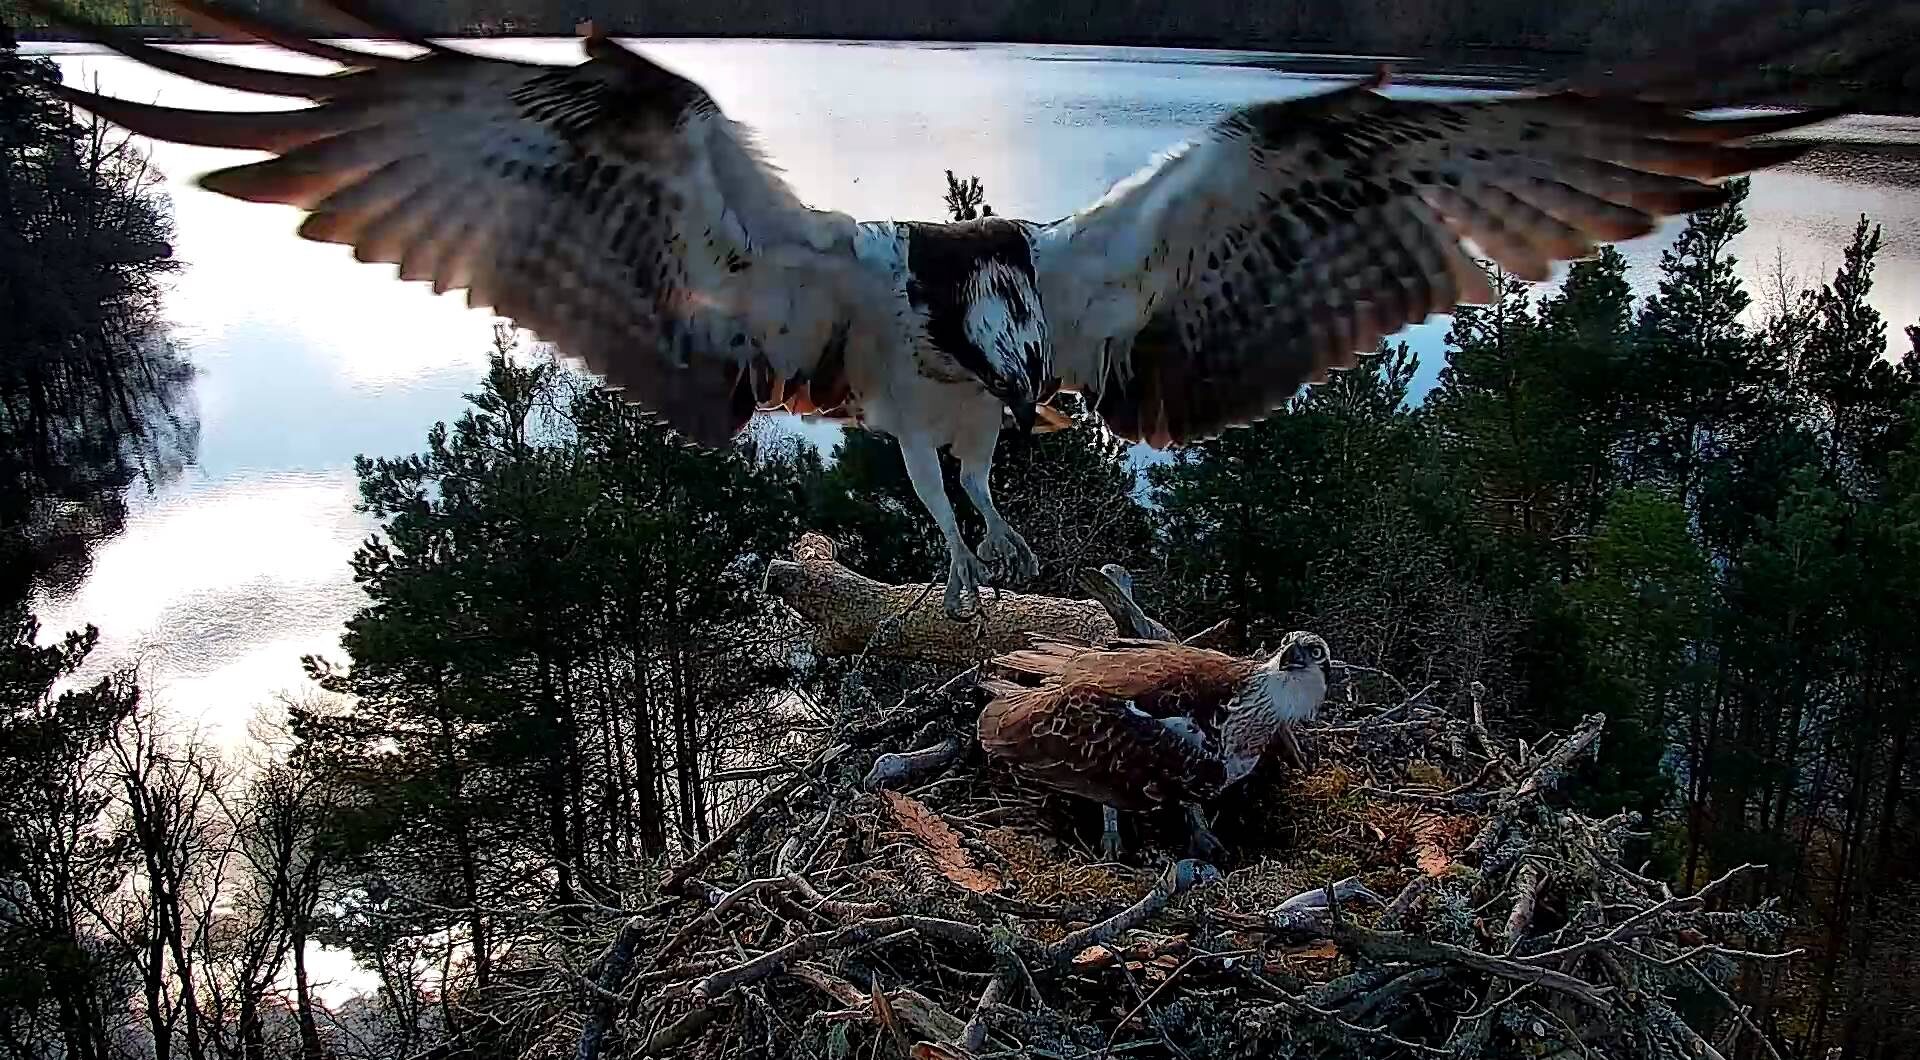 Osprey landing on nest occupied by another osprey